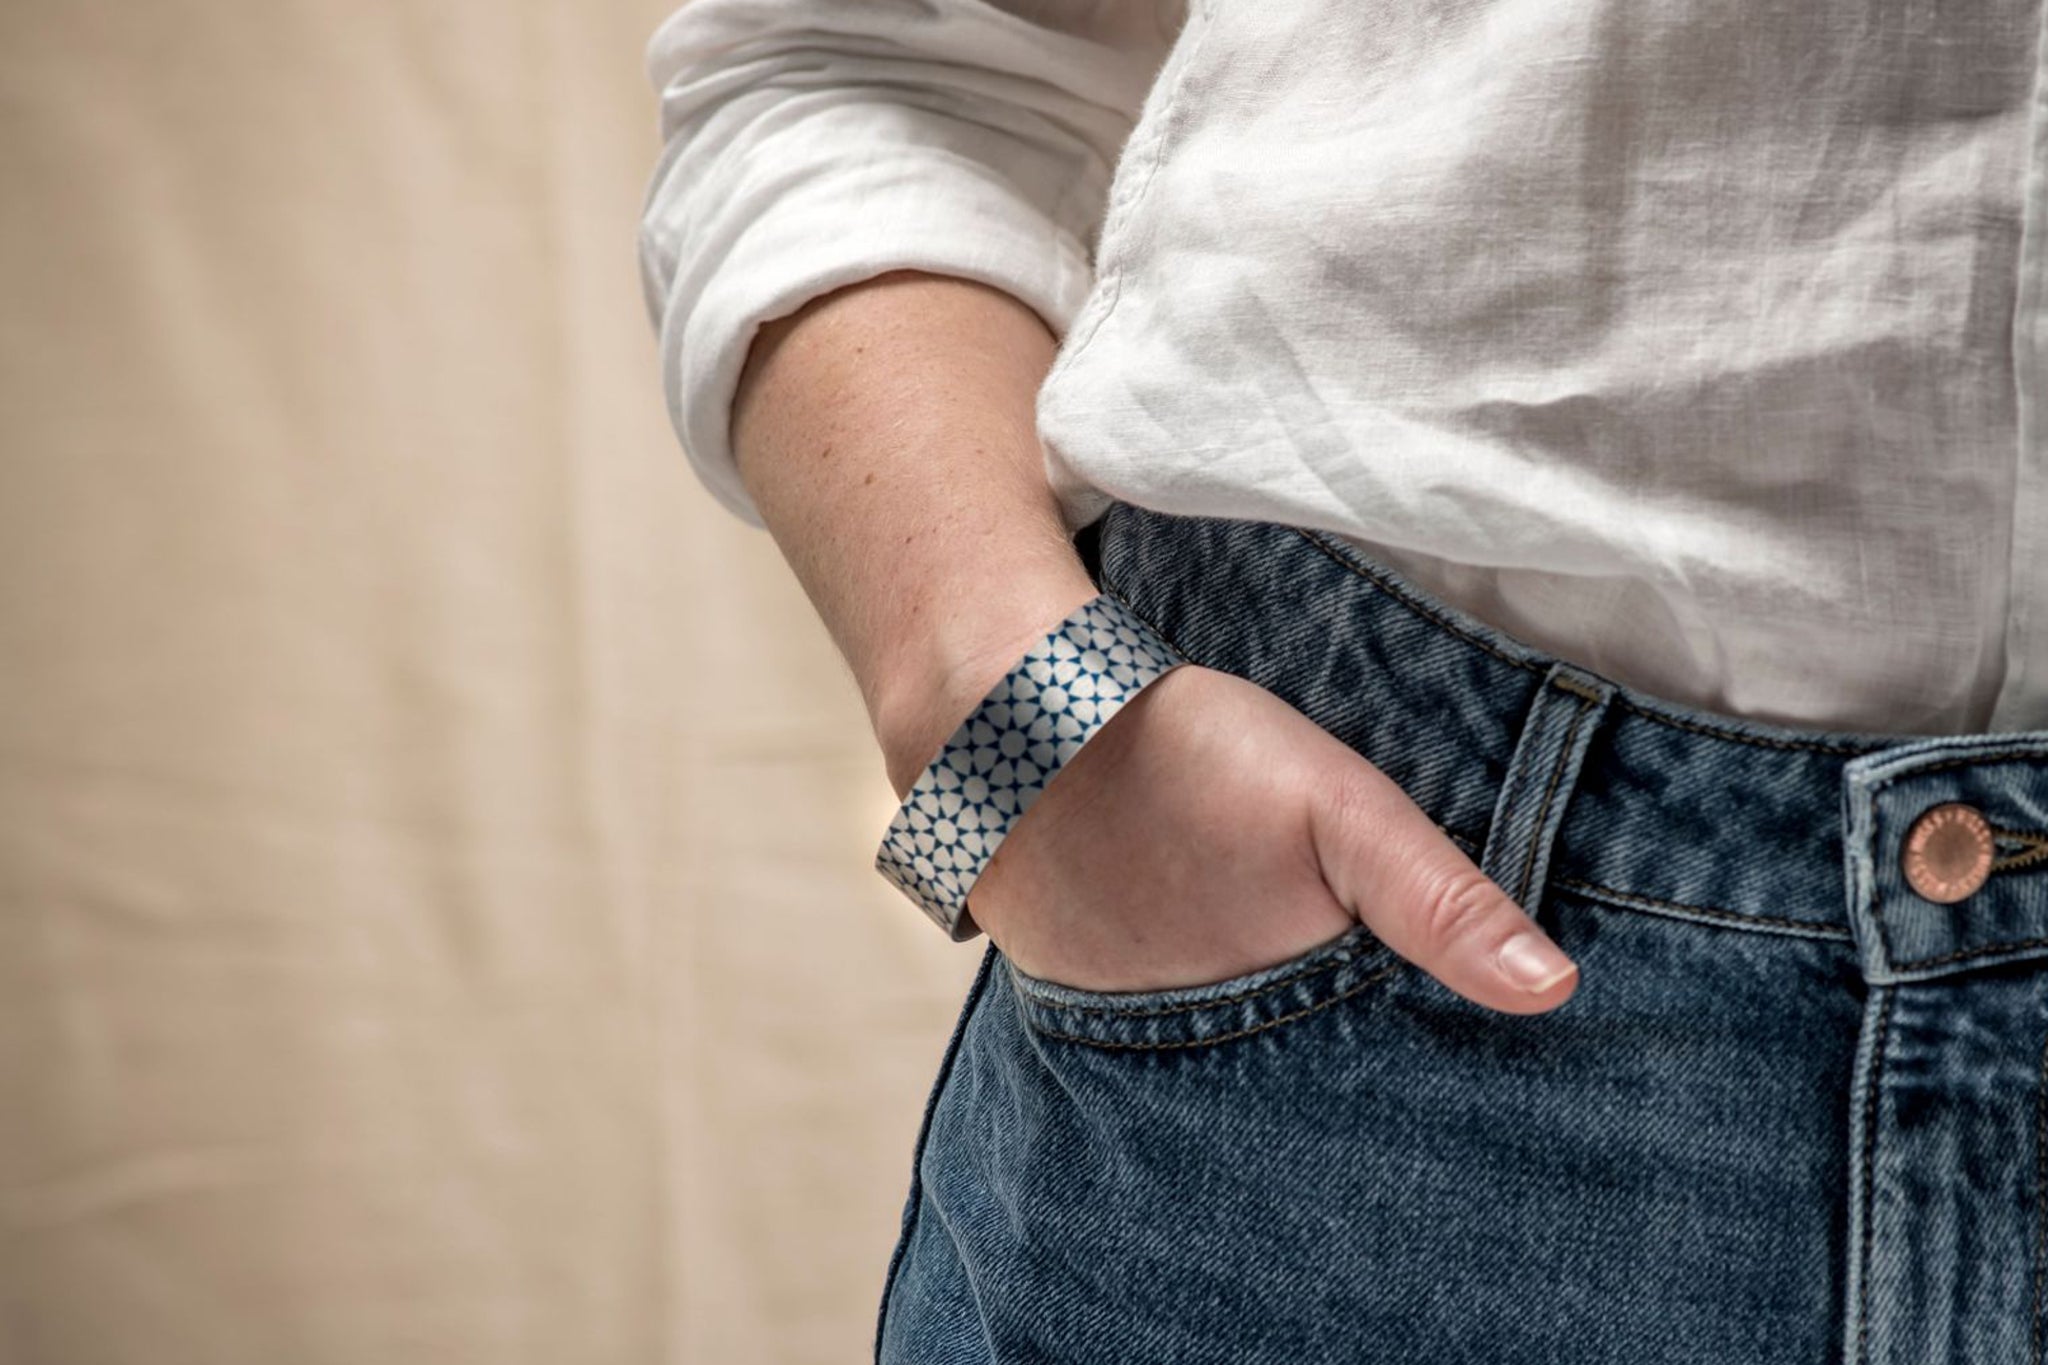 A model wears an intricate turquoise cuff bracelet.